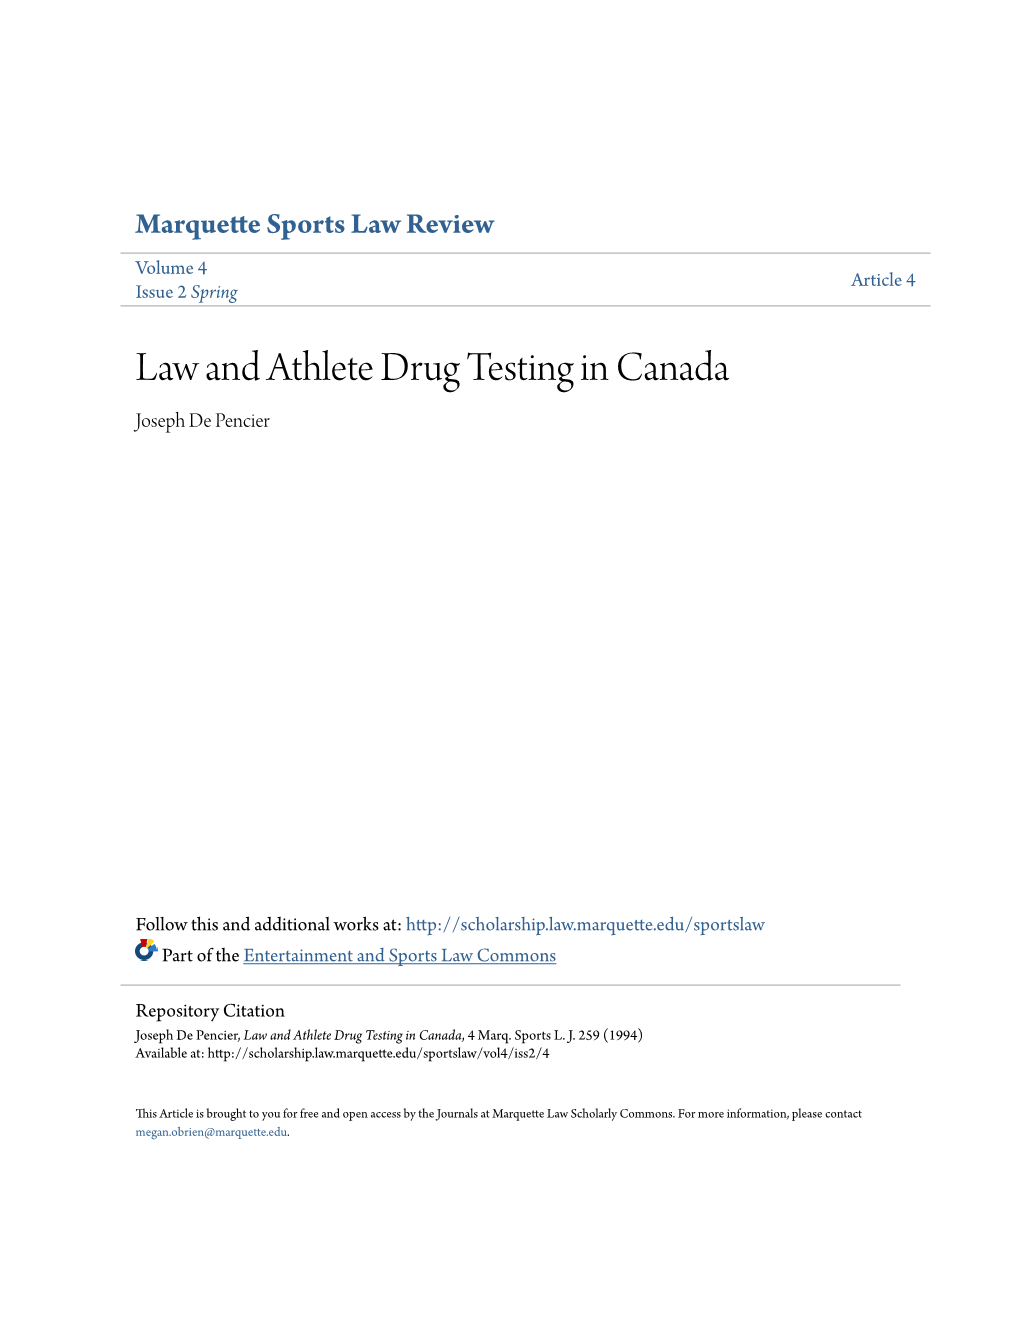 Law and Athlete Drug Testing in Canada Joseph De Pencier